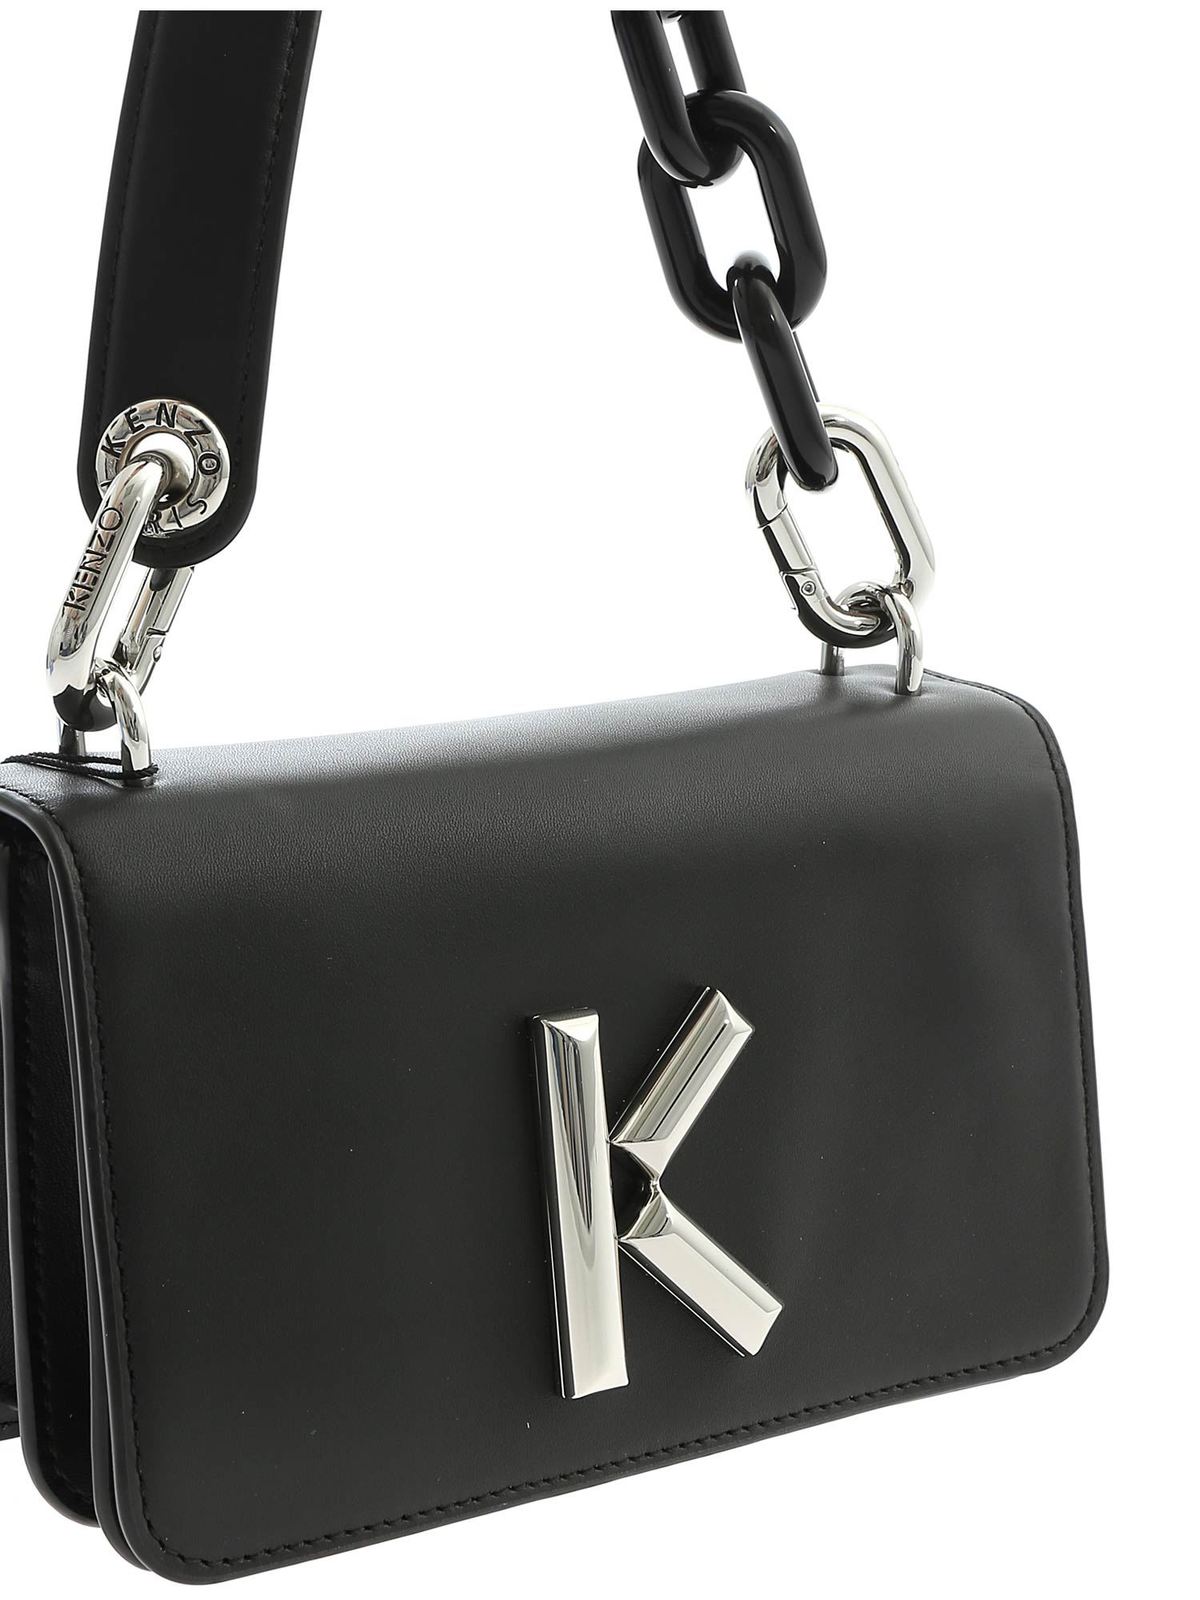 Kenzo - Kandy shoulder bag in black 